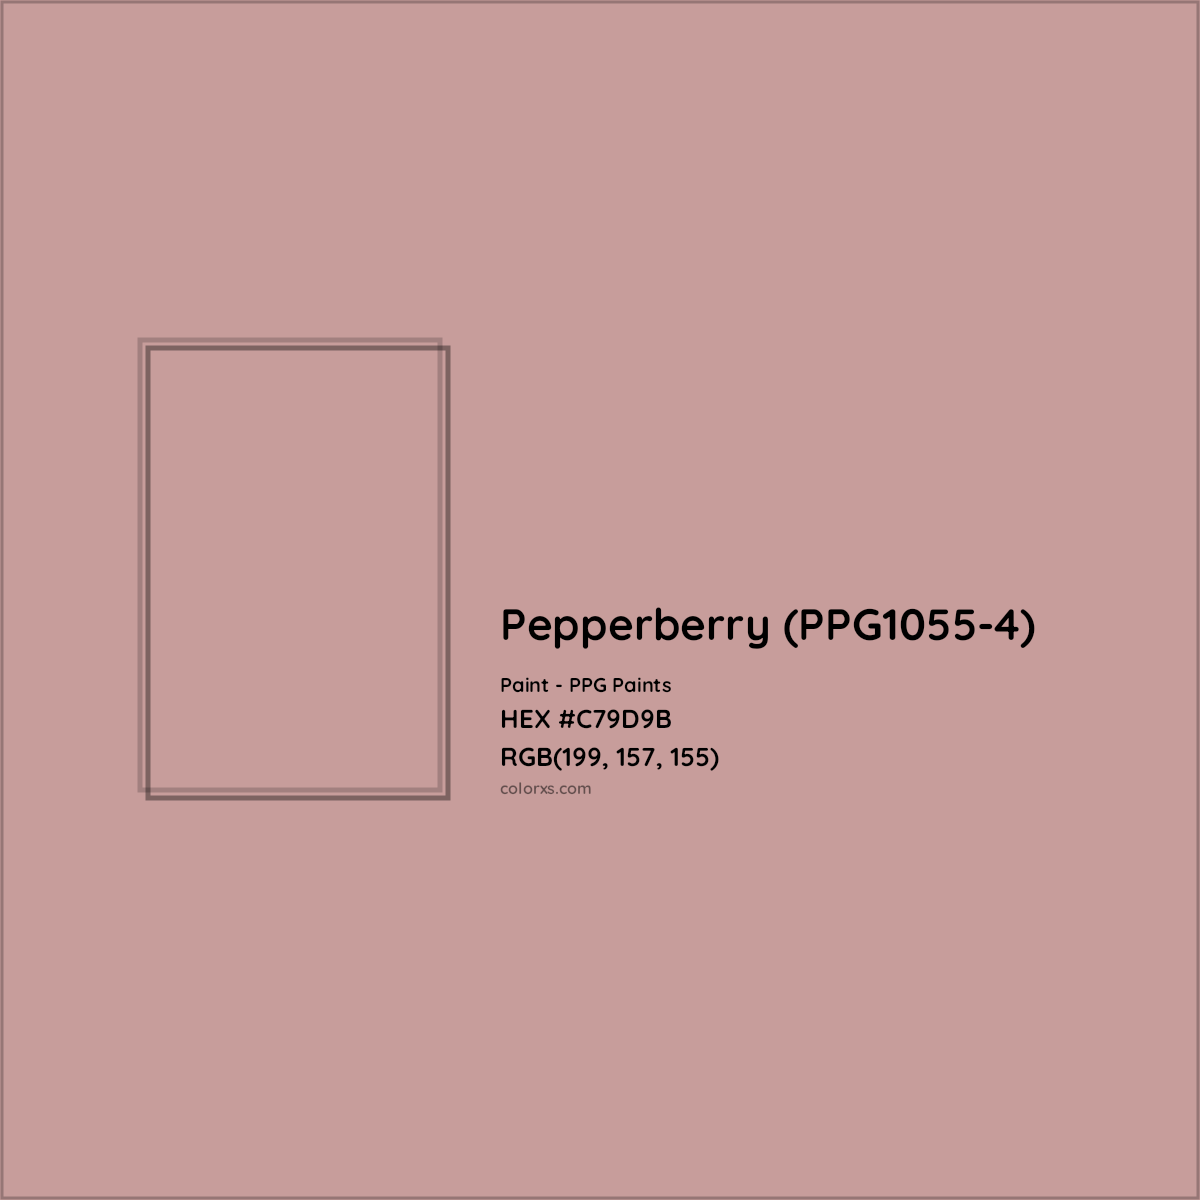 HEX #C79D9B Pepperberry (PPG1055-4) Paint PPG Paints - Color Code